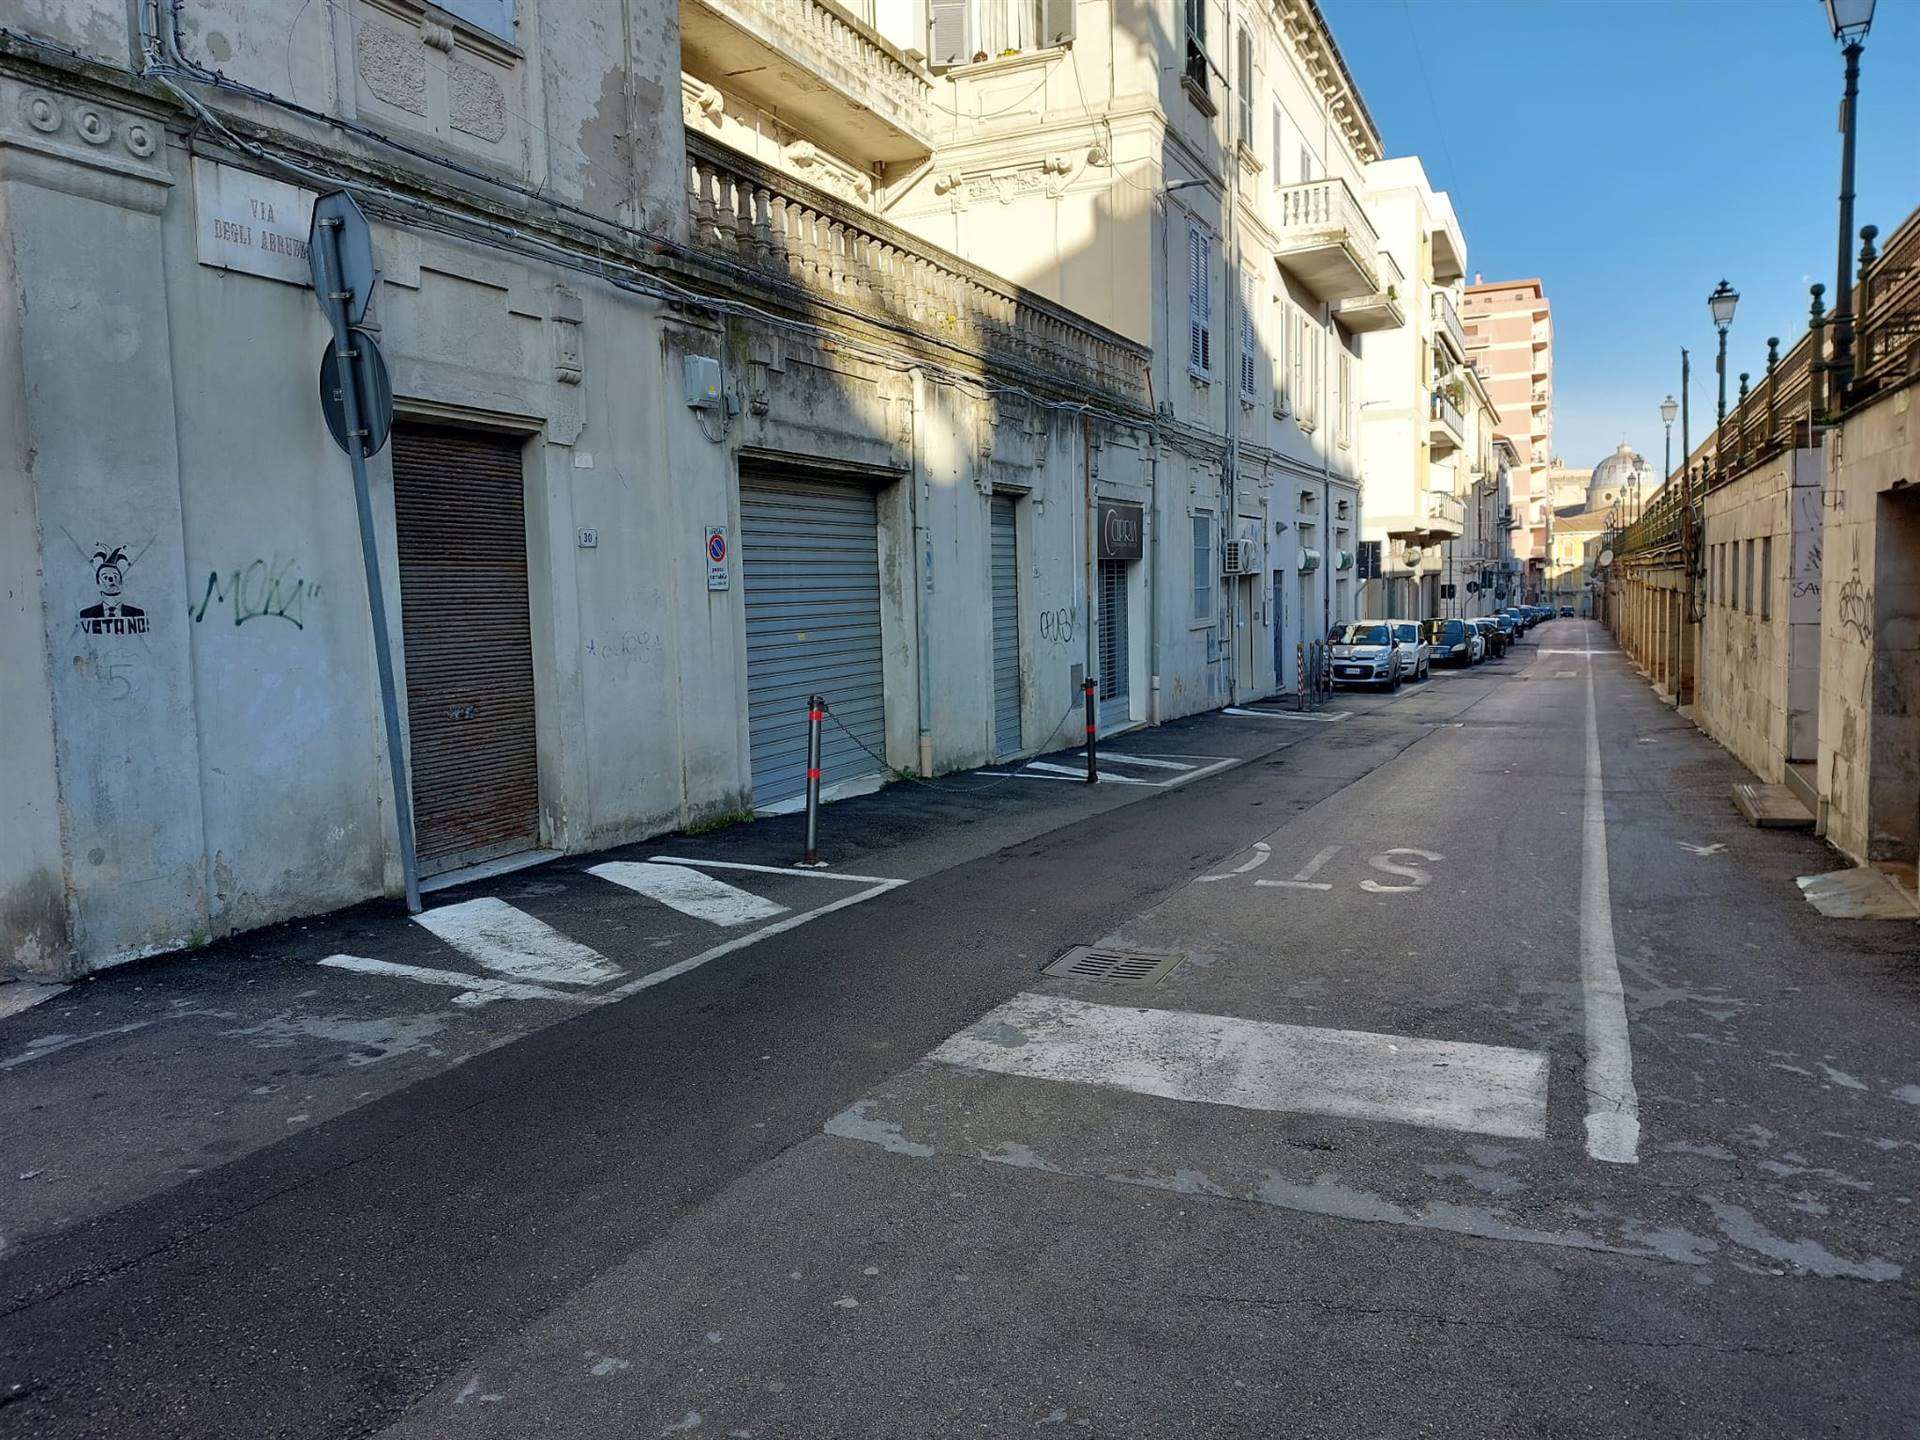 Immobile Commerciale in vendita a Lanciano, 1 locali, prezzo € 30.000 | PortaleAgenzieImmobiliari.it